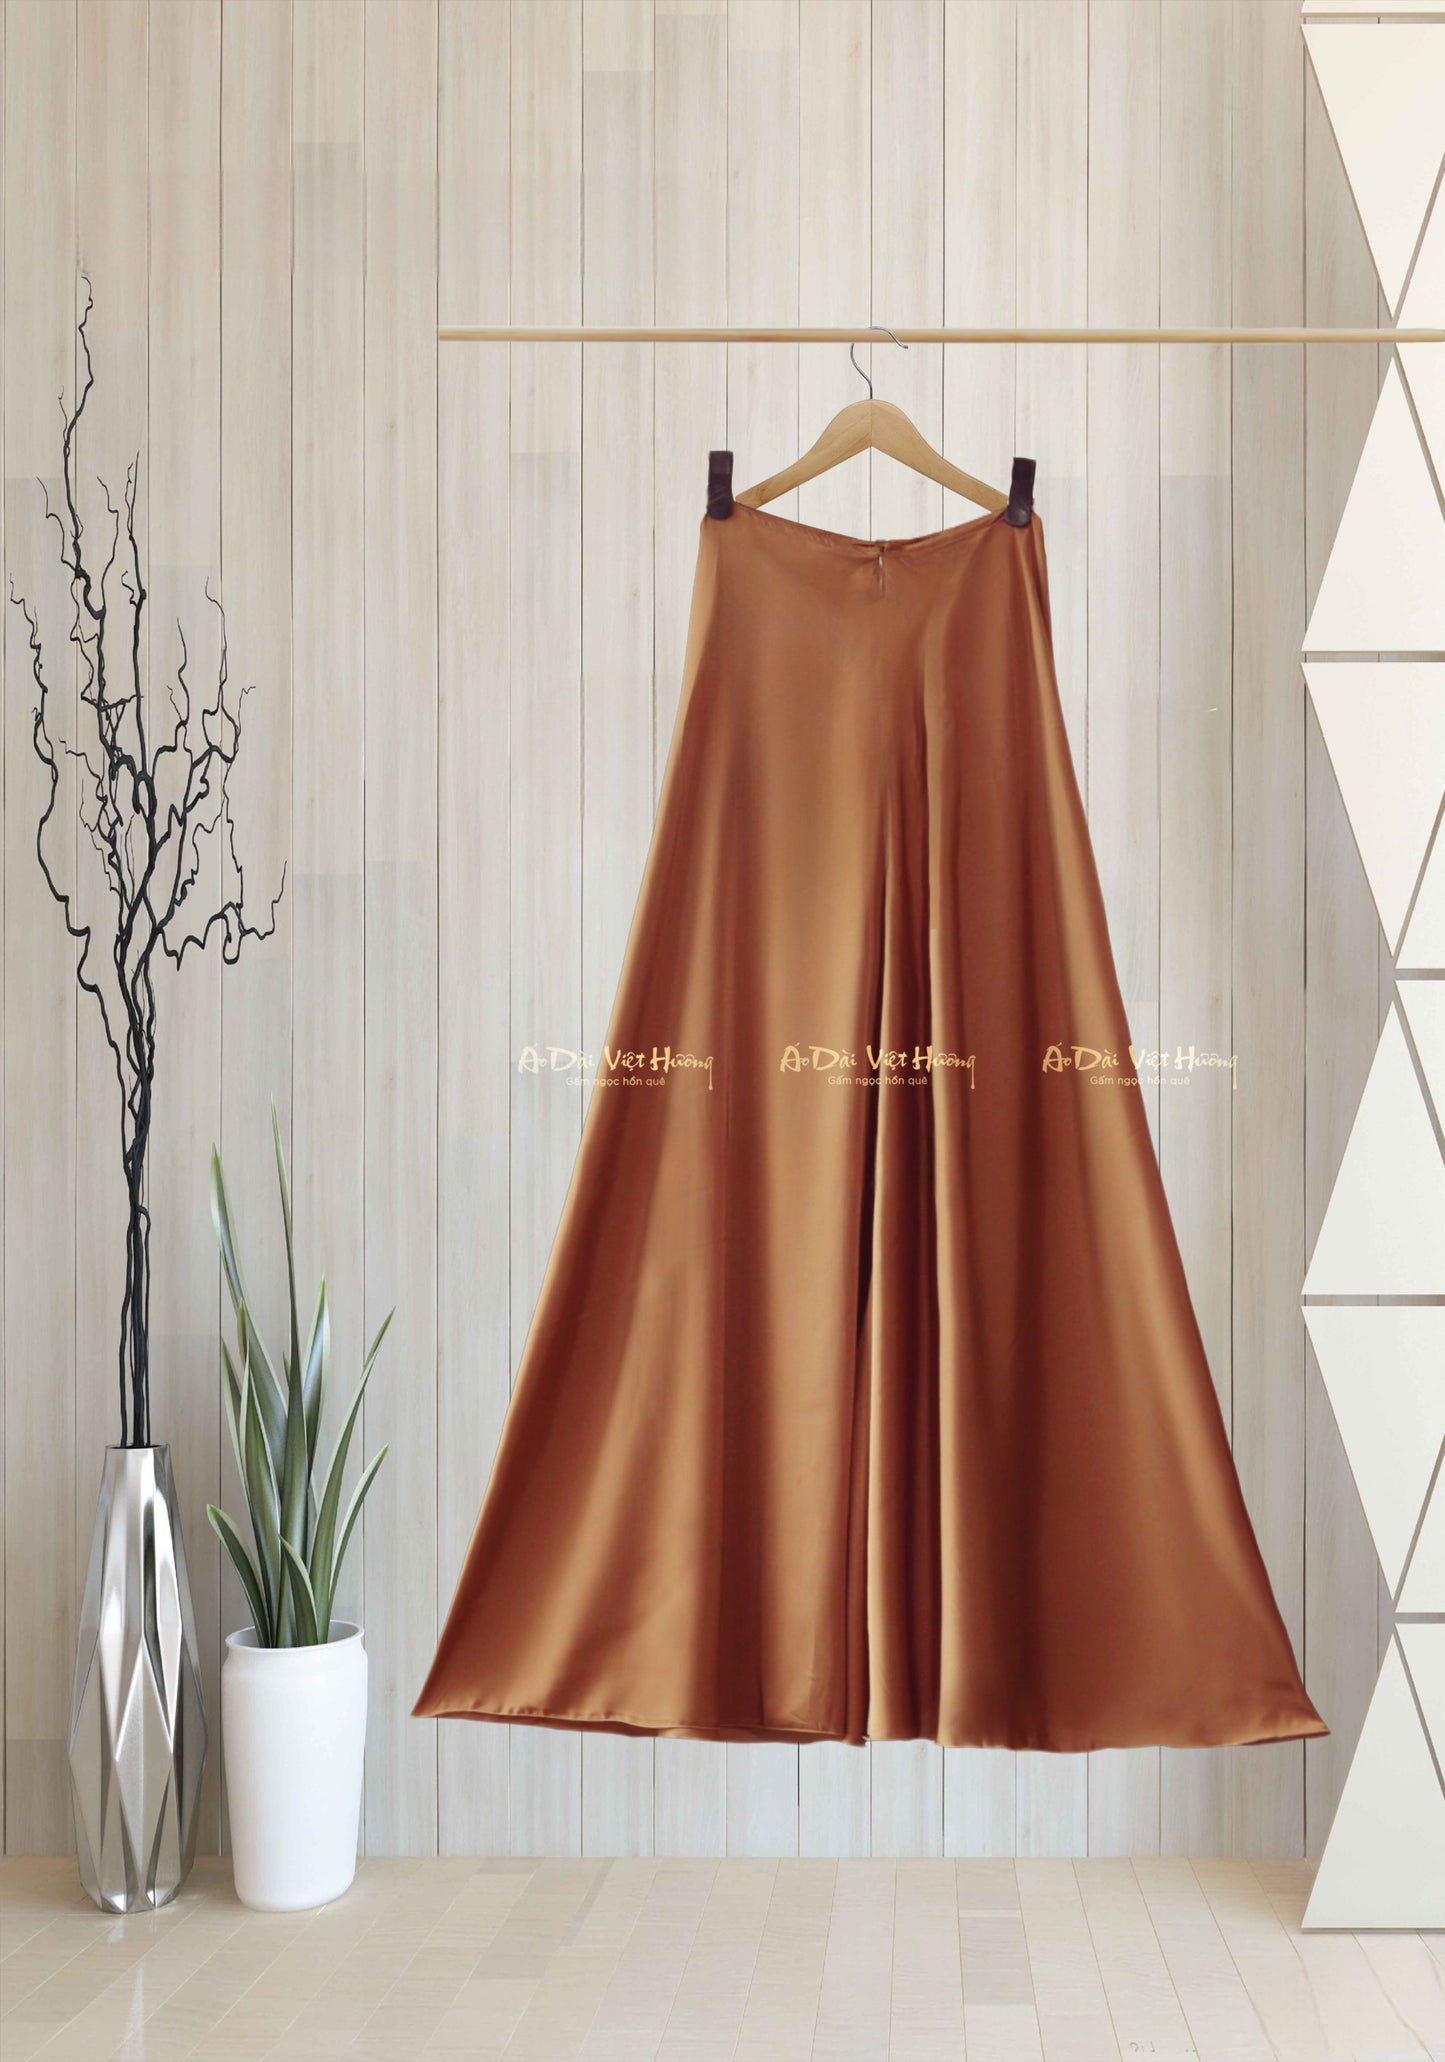 530 - Quần Váy Lụa Thái Tuấn Màu Nâu Sáng (Quần Váy Ống Xéo Lụa Thái Tuấn Nâu Sáng)